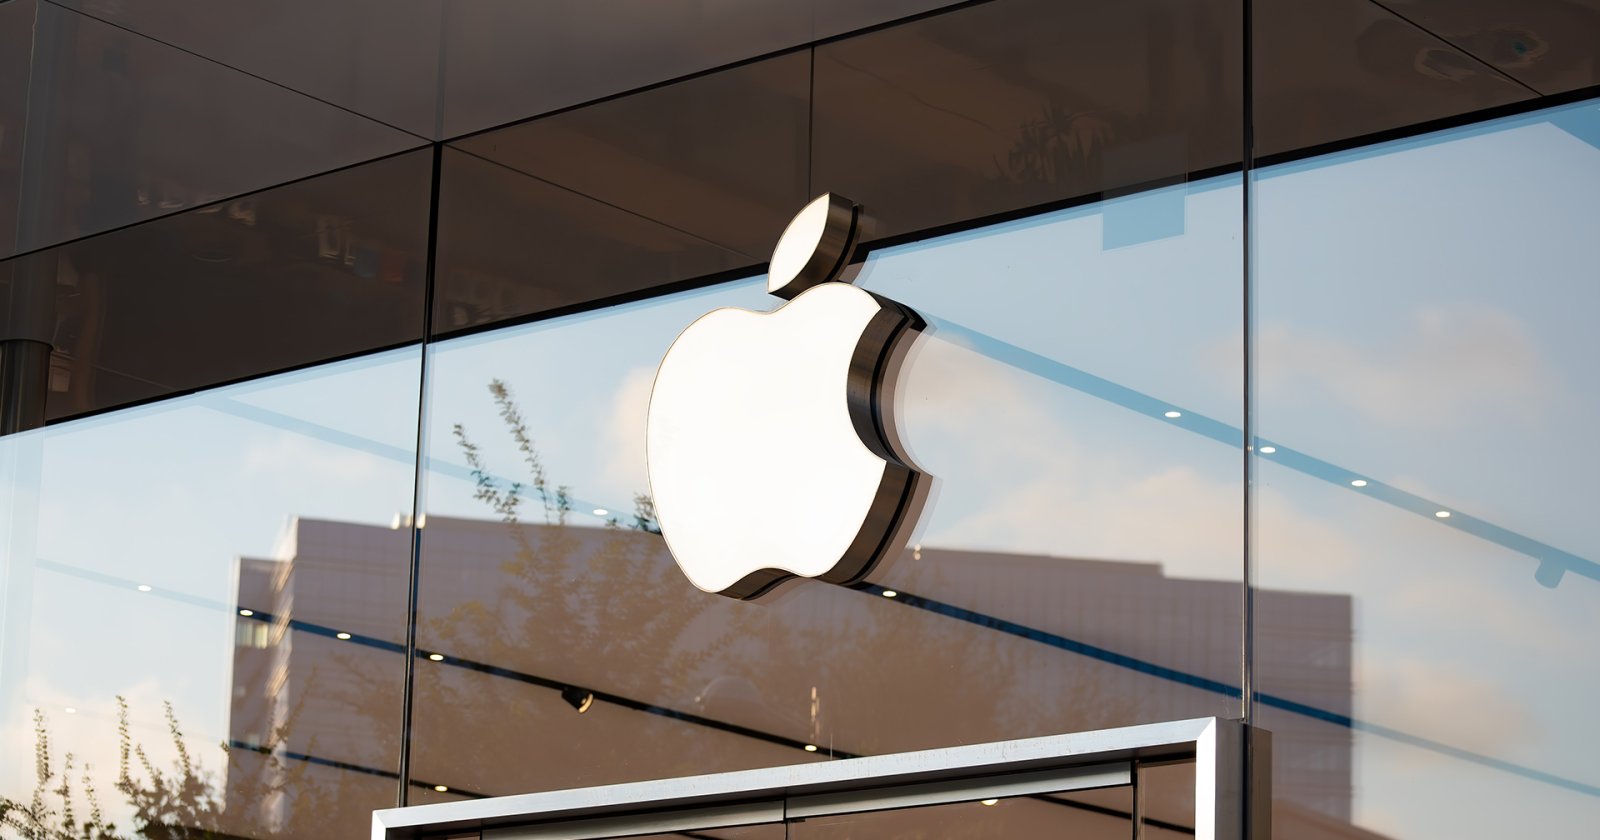 กระทรวงยุติธรรมของสหรัฐอเมริกาเตรียมฟ้องร้อง Apple กรณีผูกขาดหลายประเด็น